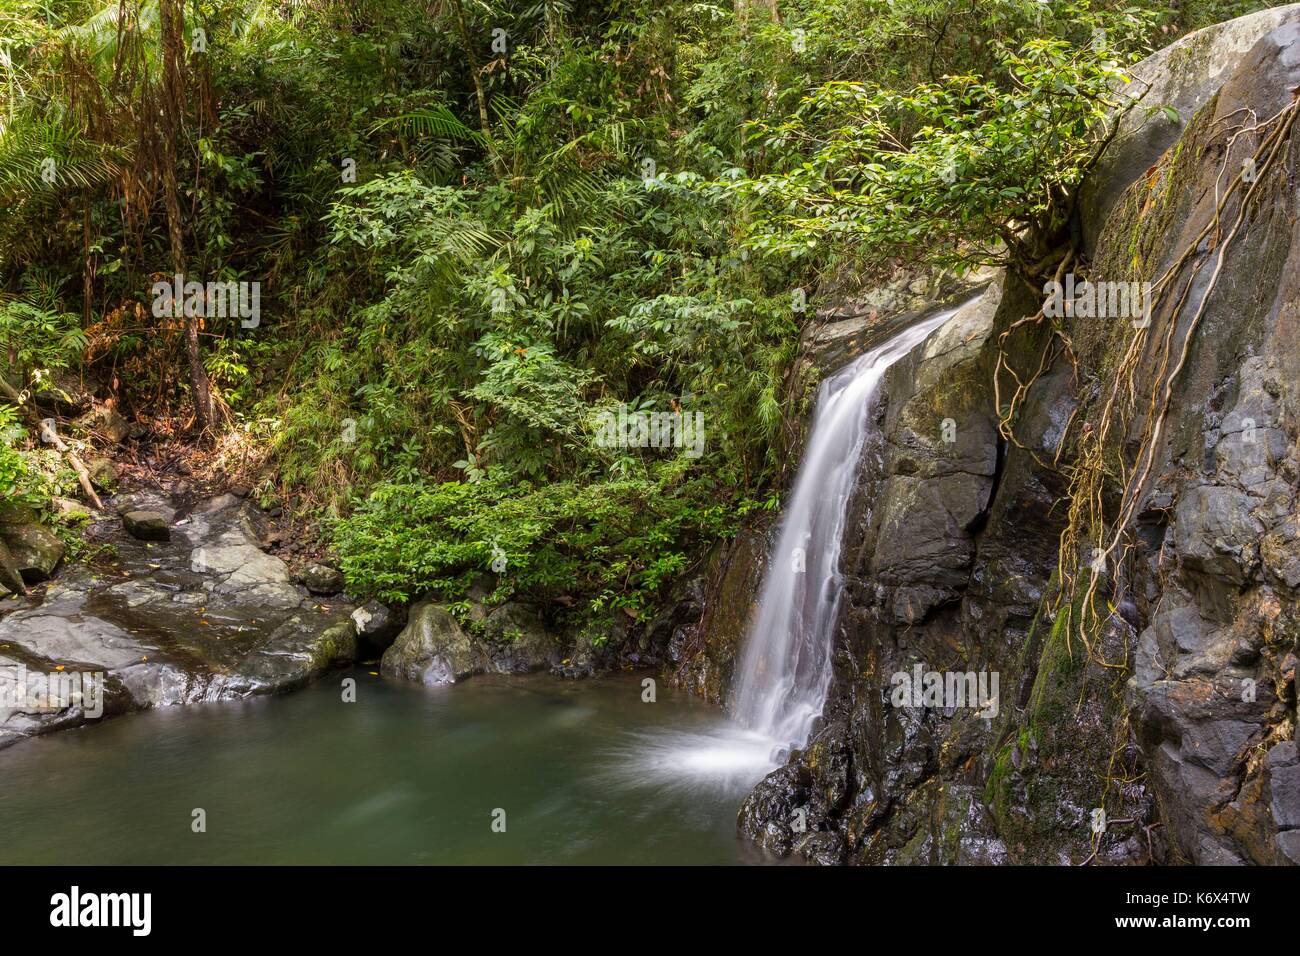 Philippines, Palawan, Napsan, Salakot waterfall Stock Photo - Alamy